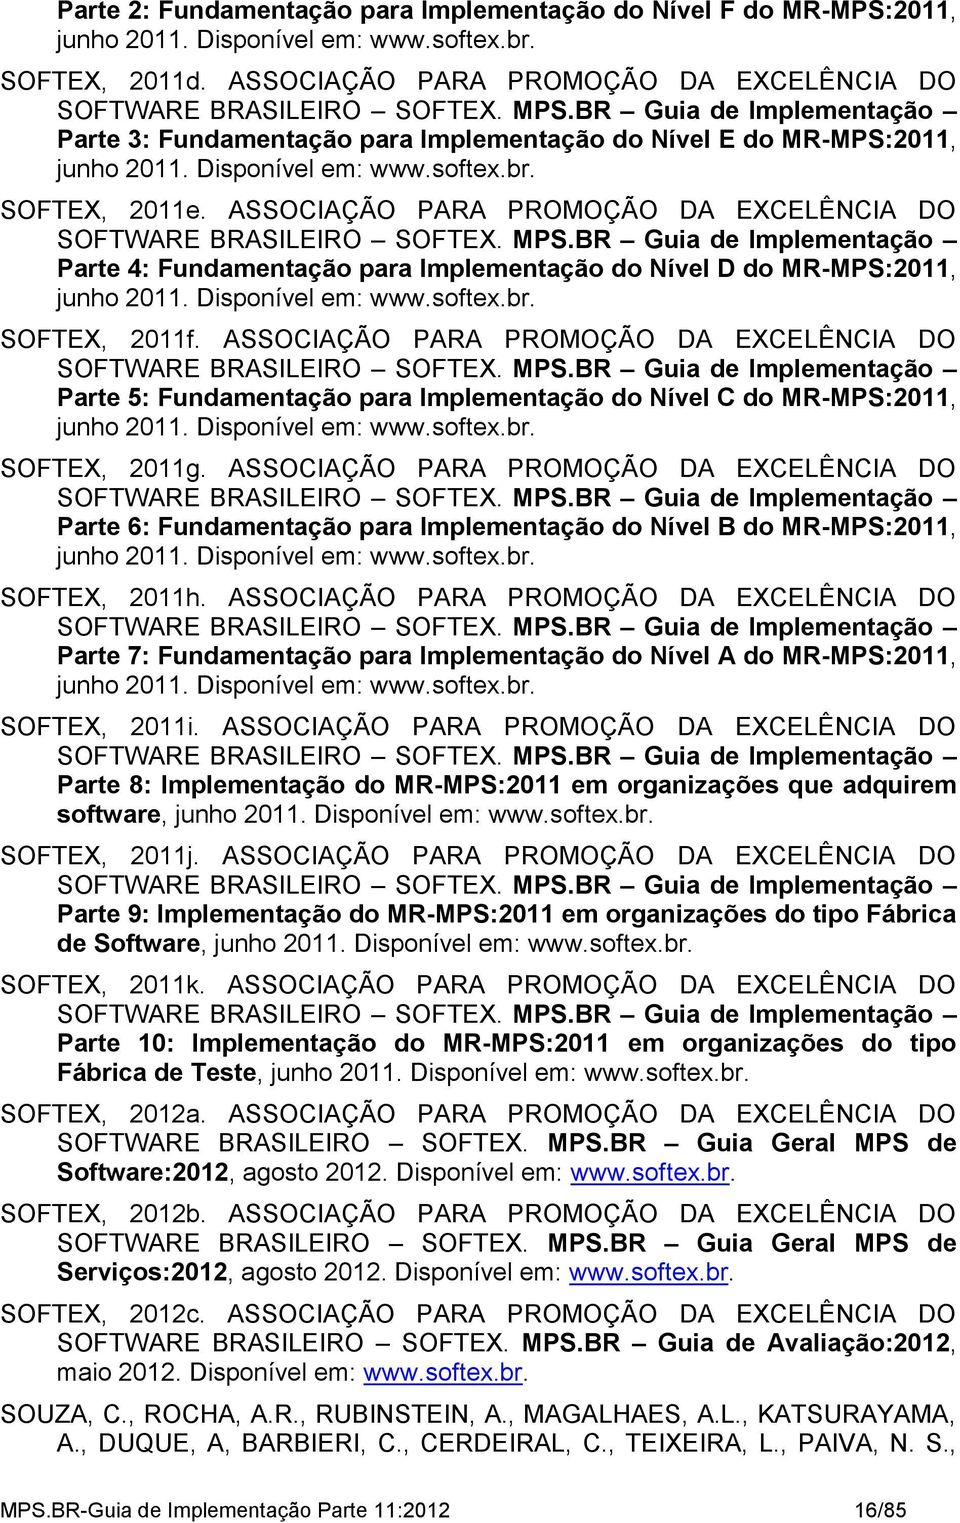 ASSOCIAÇÃO PARA PROMOÇÃO DA EXCELÊNCIA DO SOFTWARE BRASILEIRO SOFTEX. MPS.BR Guia de Implementação Parte 4: Fundamentação para Implementação do Nível D do MR-MPS:2011, junho 2011. Disponível em: www.